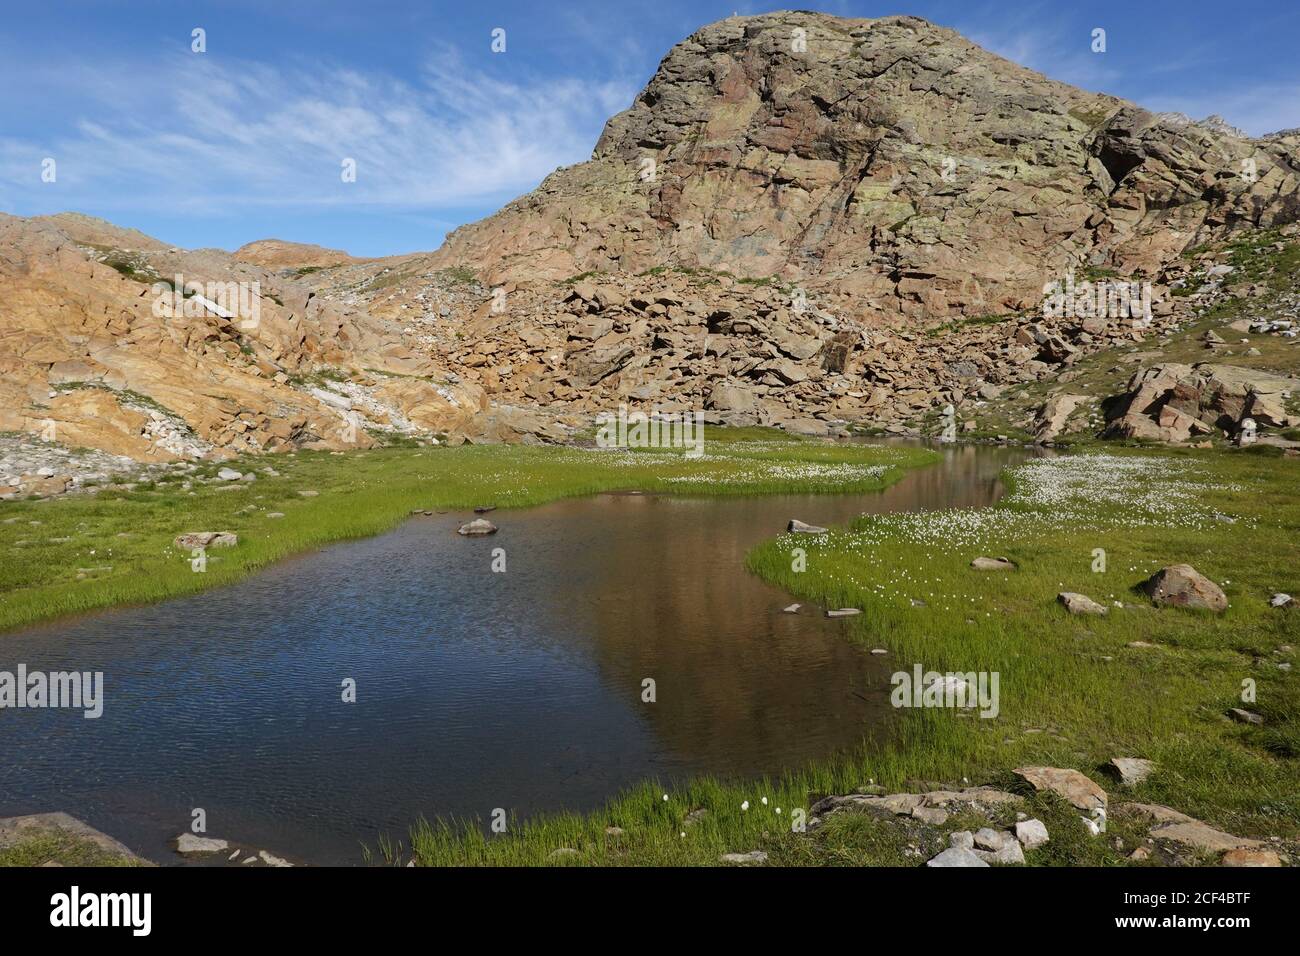 Scheuchzer-Baumwollgras wächst am Ufer eines Bergsees In einer schroffen alpinen Landschaft Stockfoto